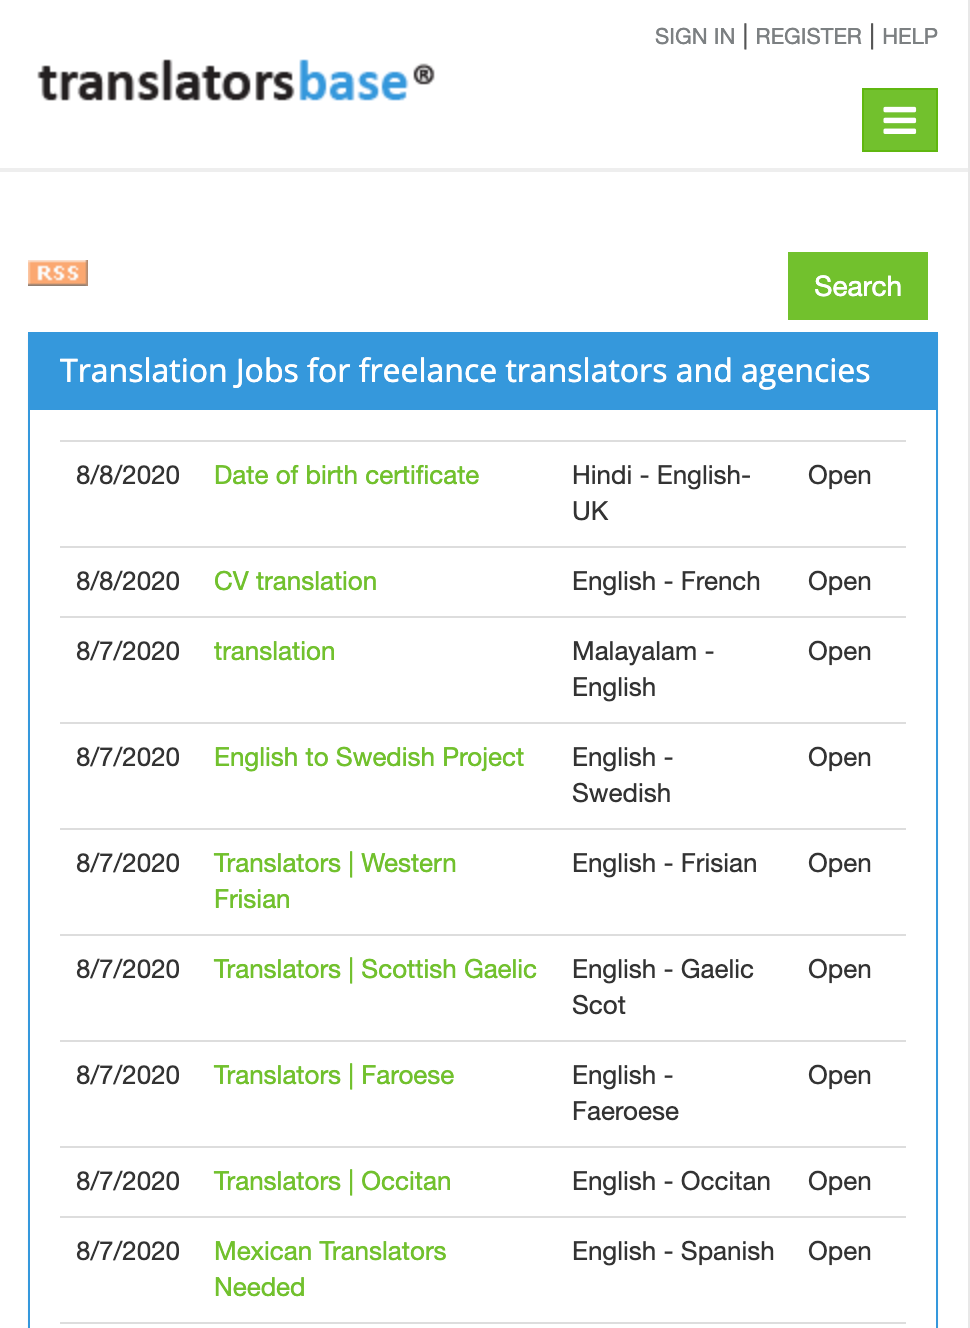 TranslatorsBase Job Boards